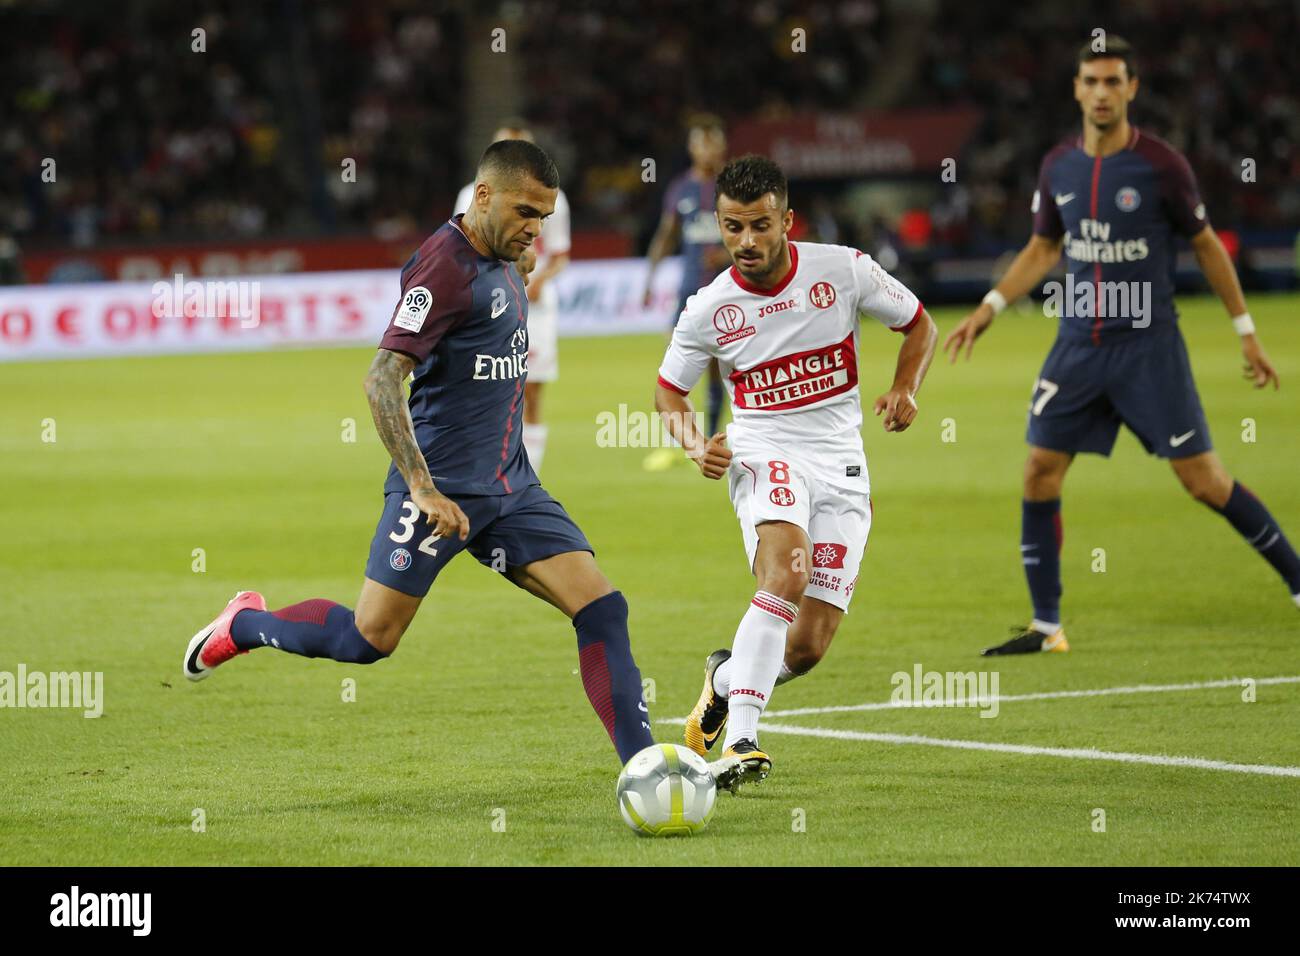 Jimmy DURMAZ / Dani ALVES during the Ligue 1 match between Paris Saint-Germain v Toulouse at the Parc des Princes Stock Photo